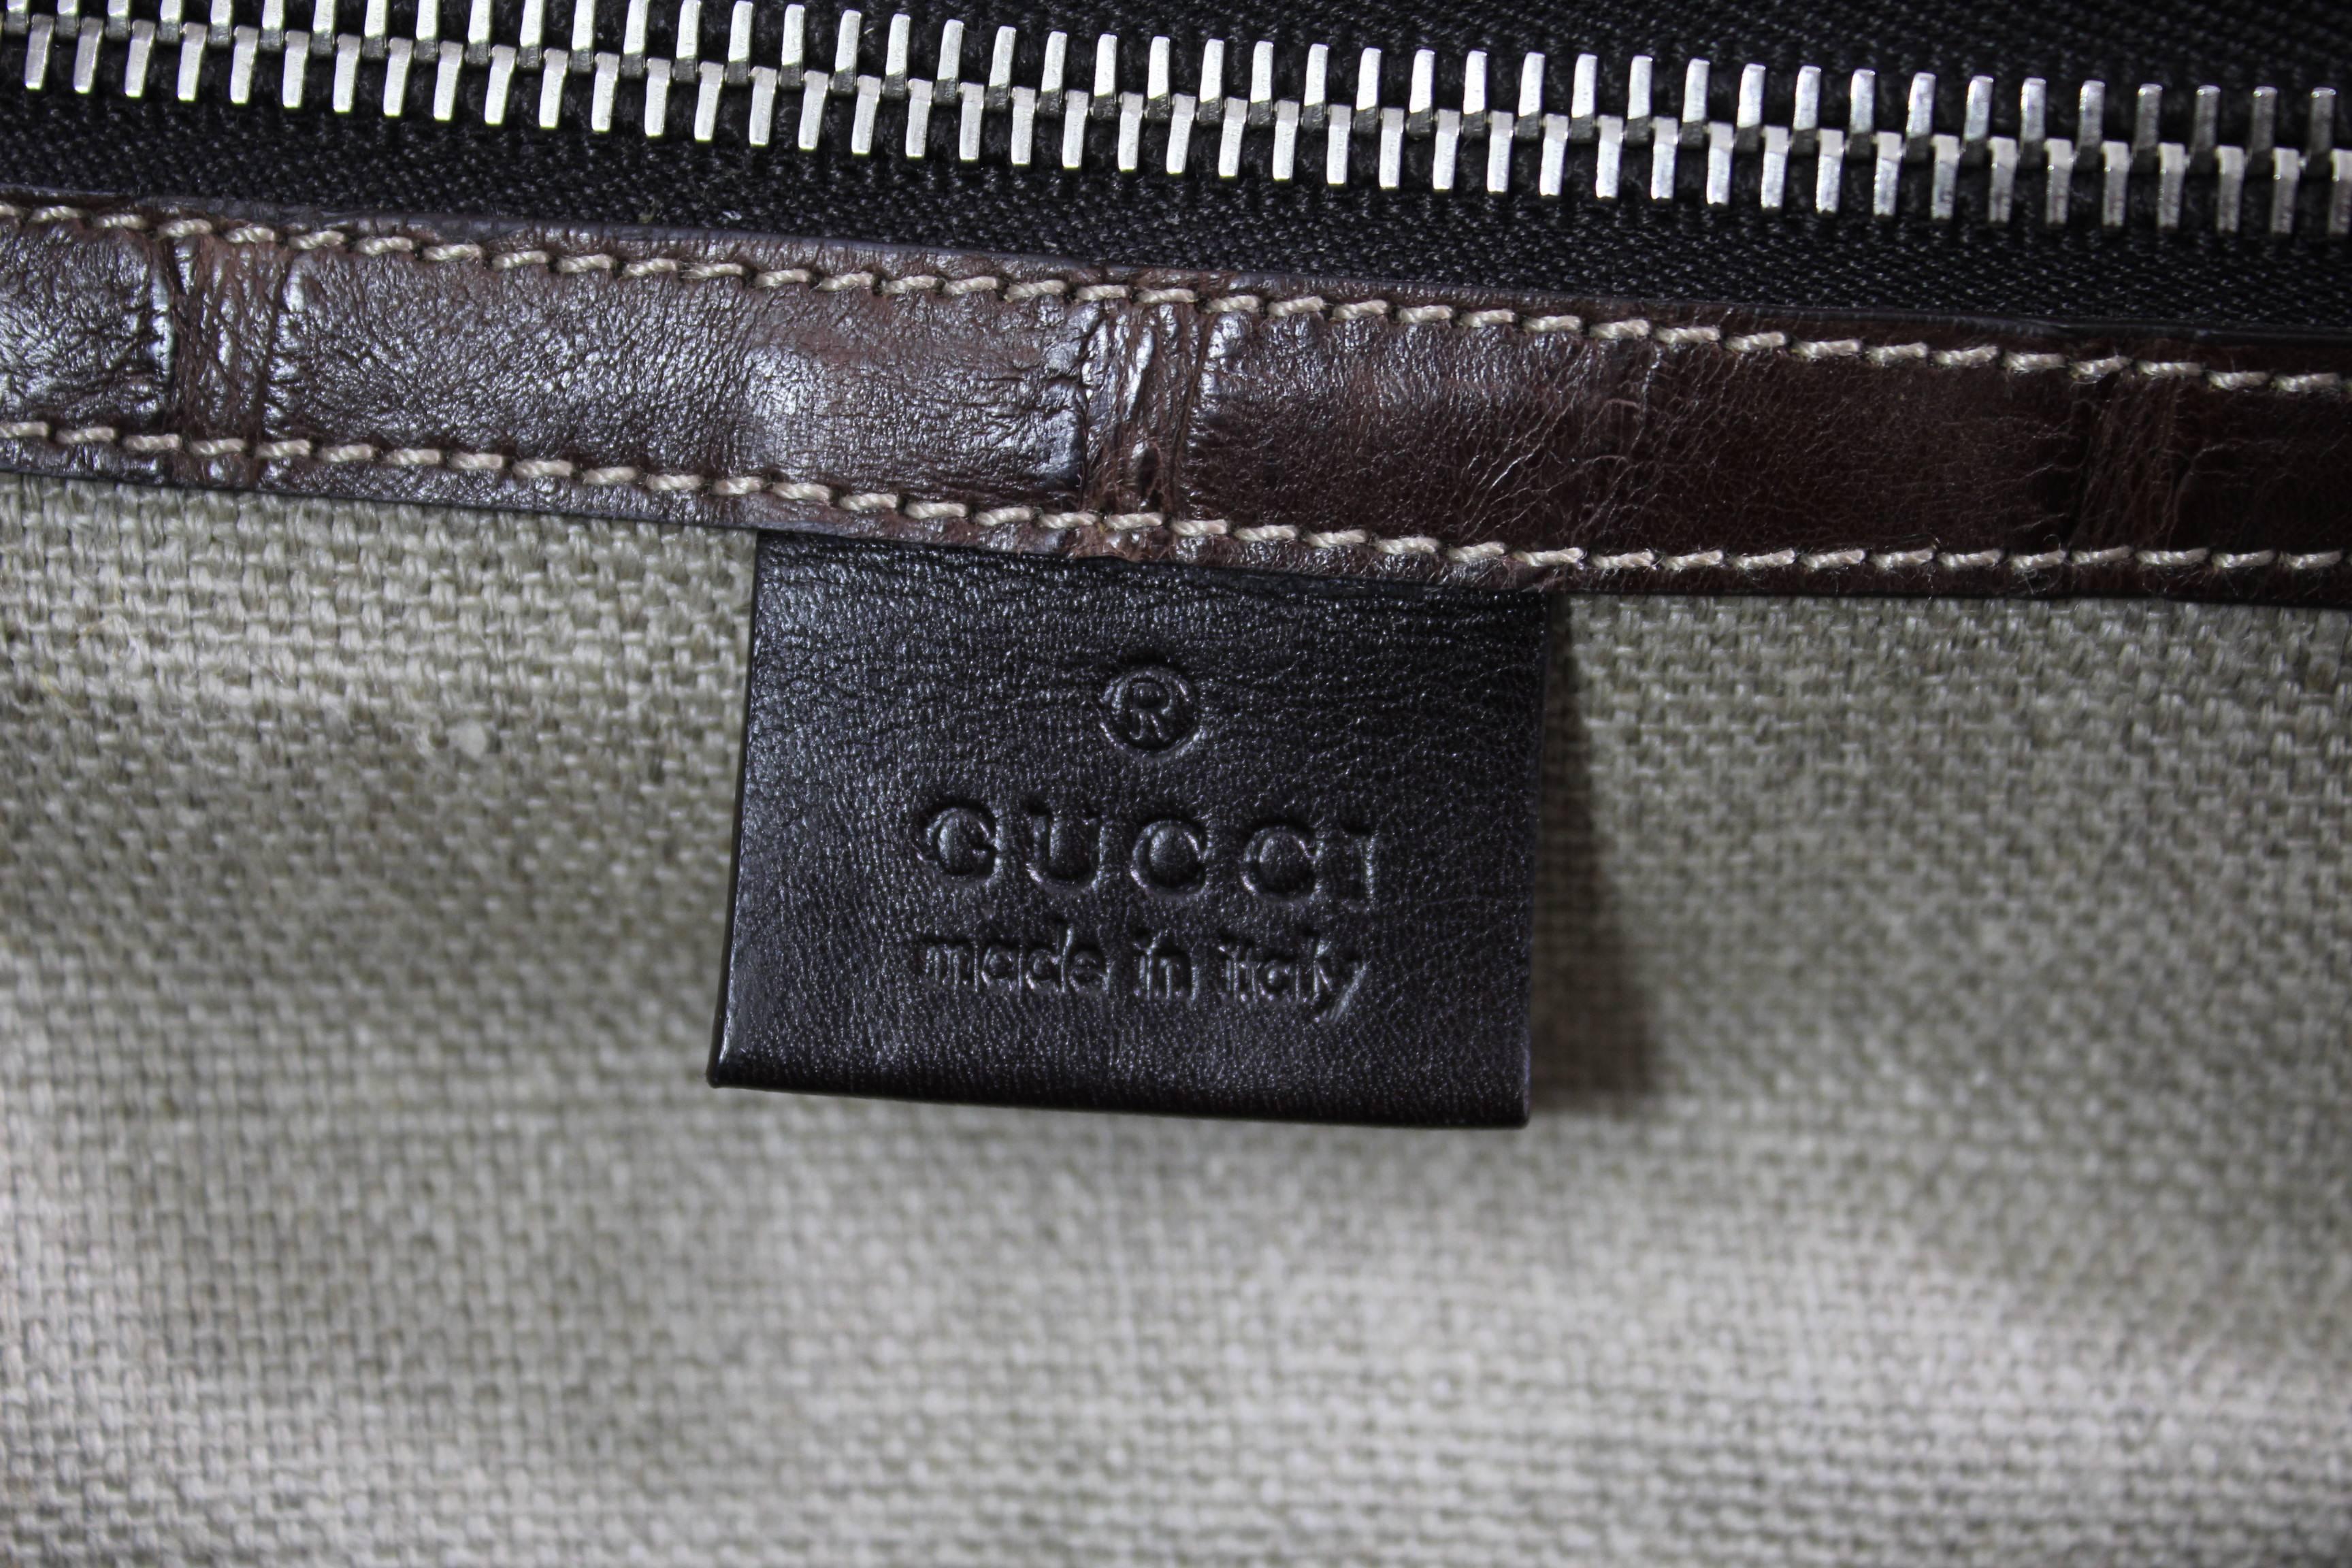 New 2007 Gucci Men's Cocco Nappato crocodile Travel Bag with Detachable Strap 2